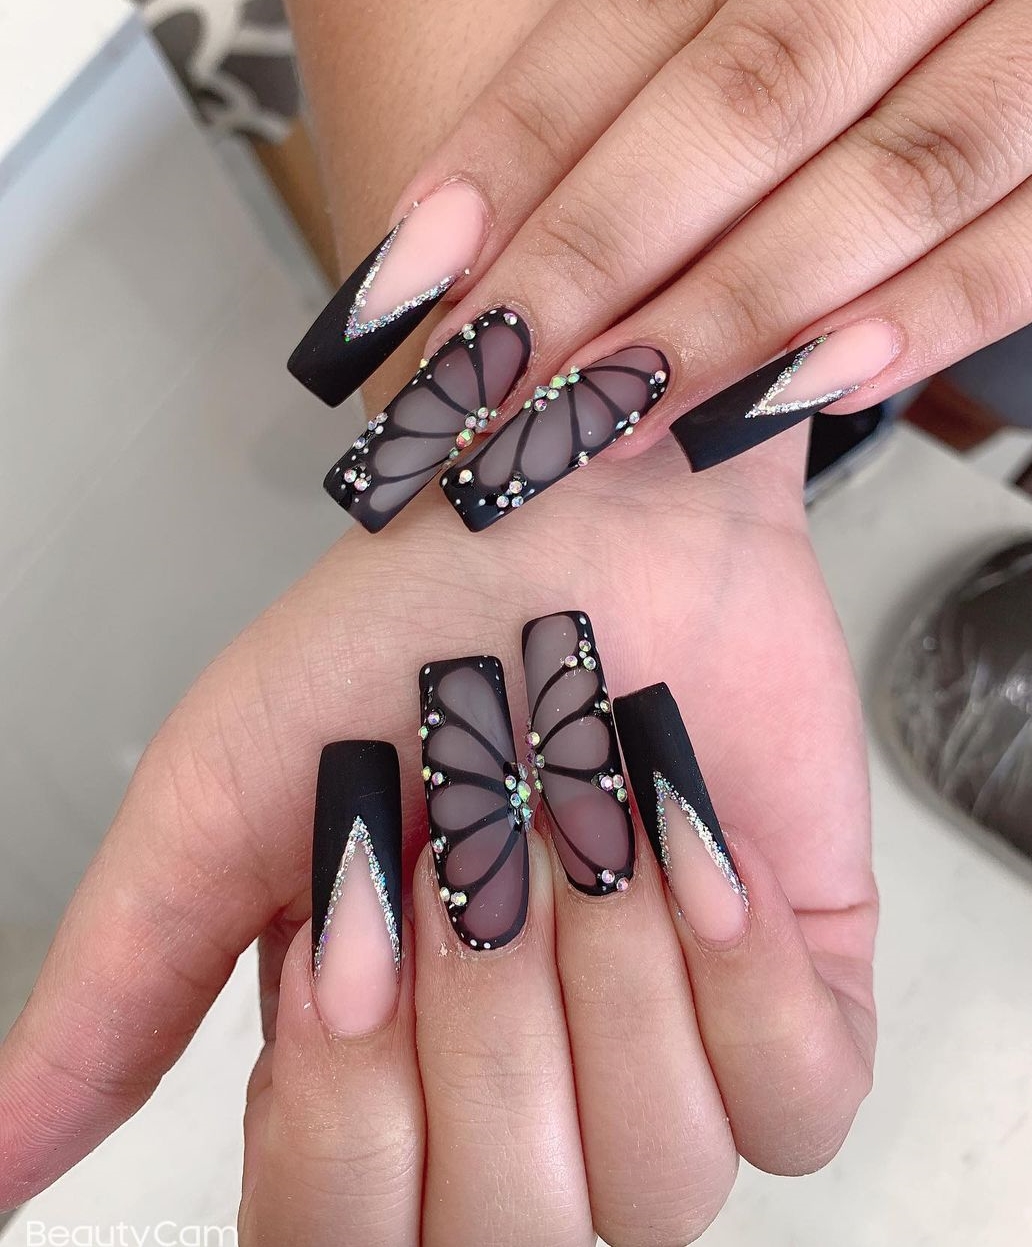 Vierkante zwarte nagels met vlinderontwerp